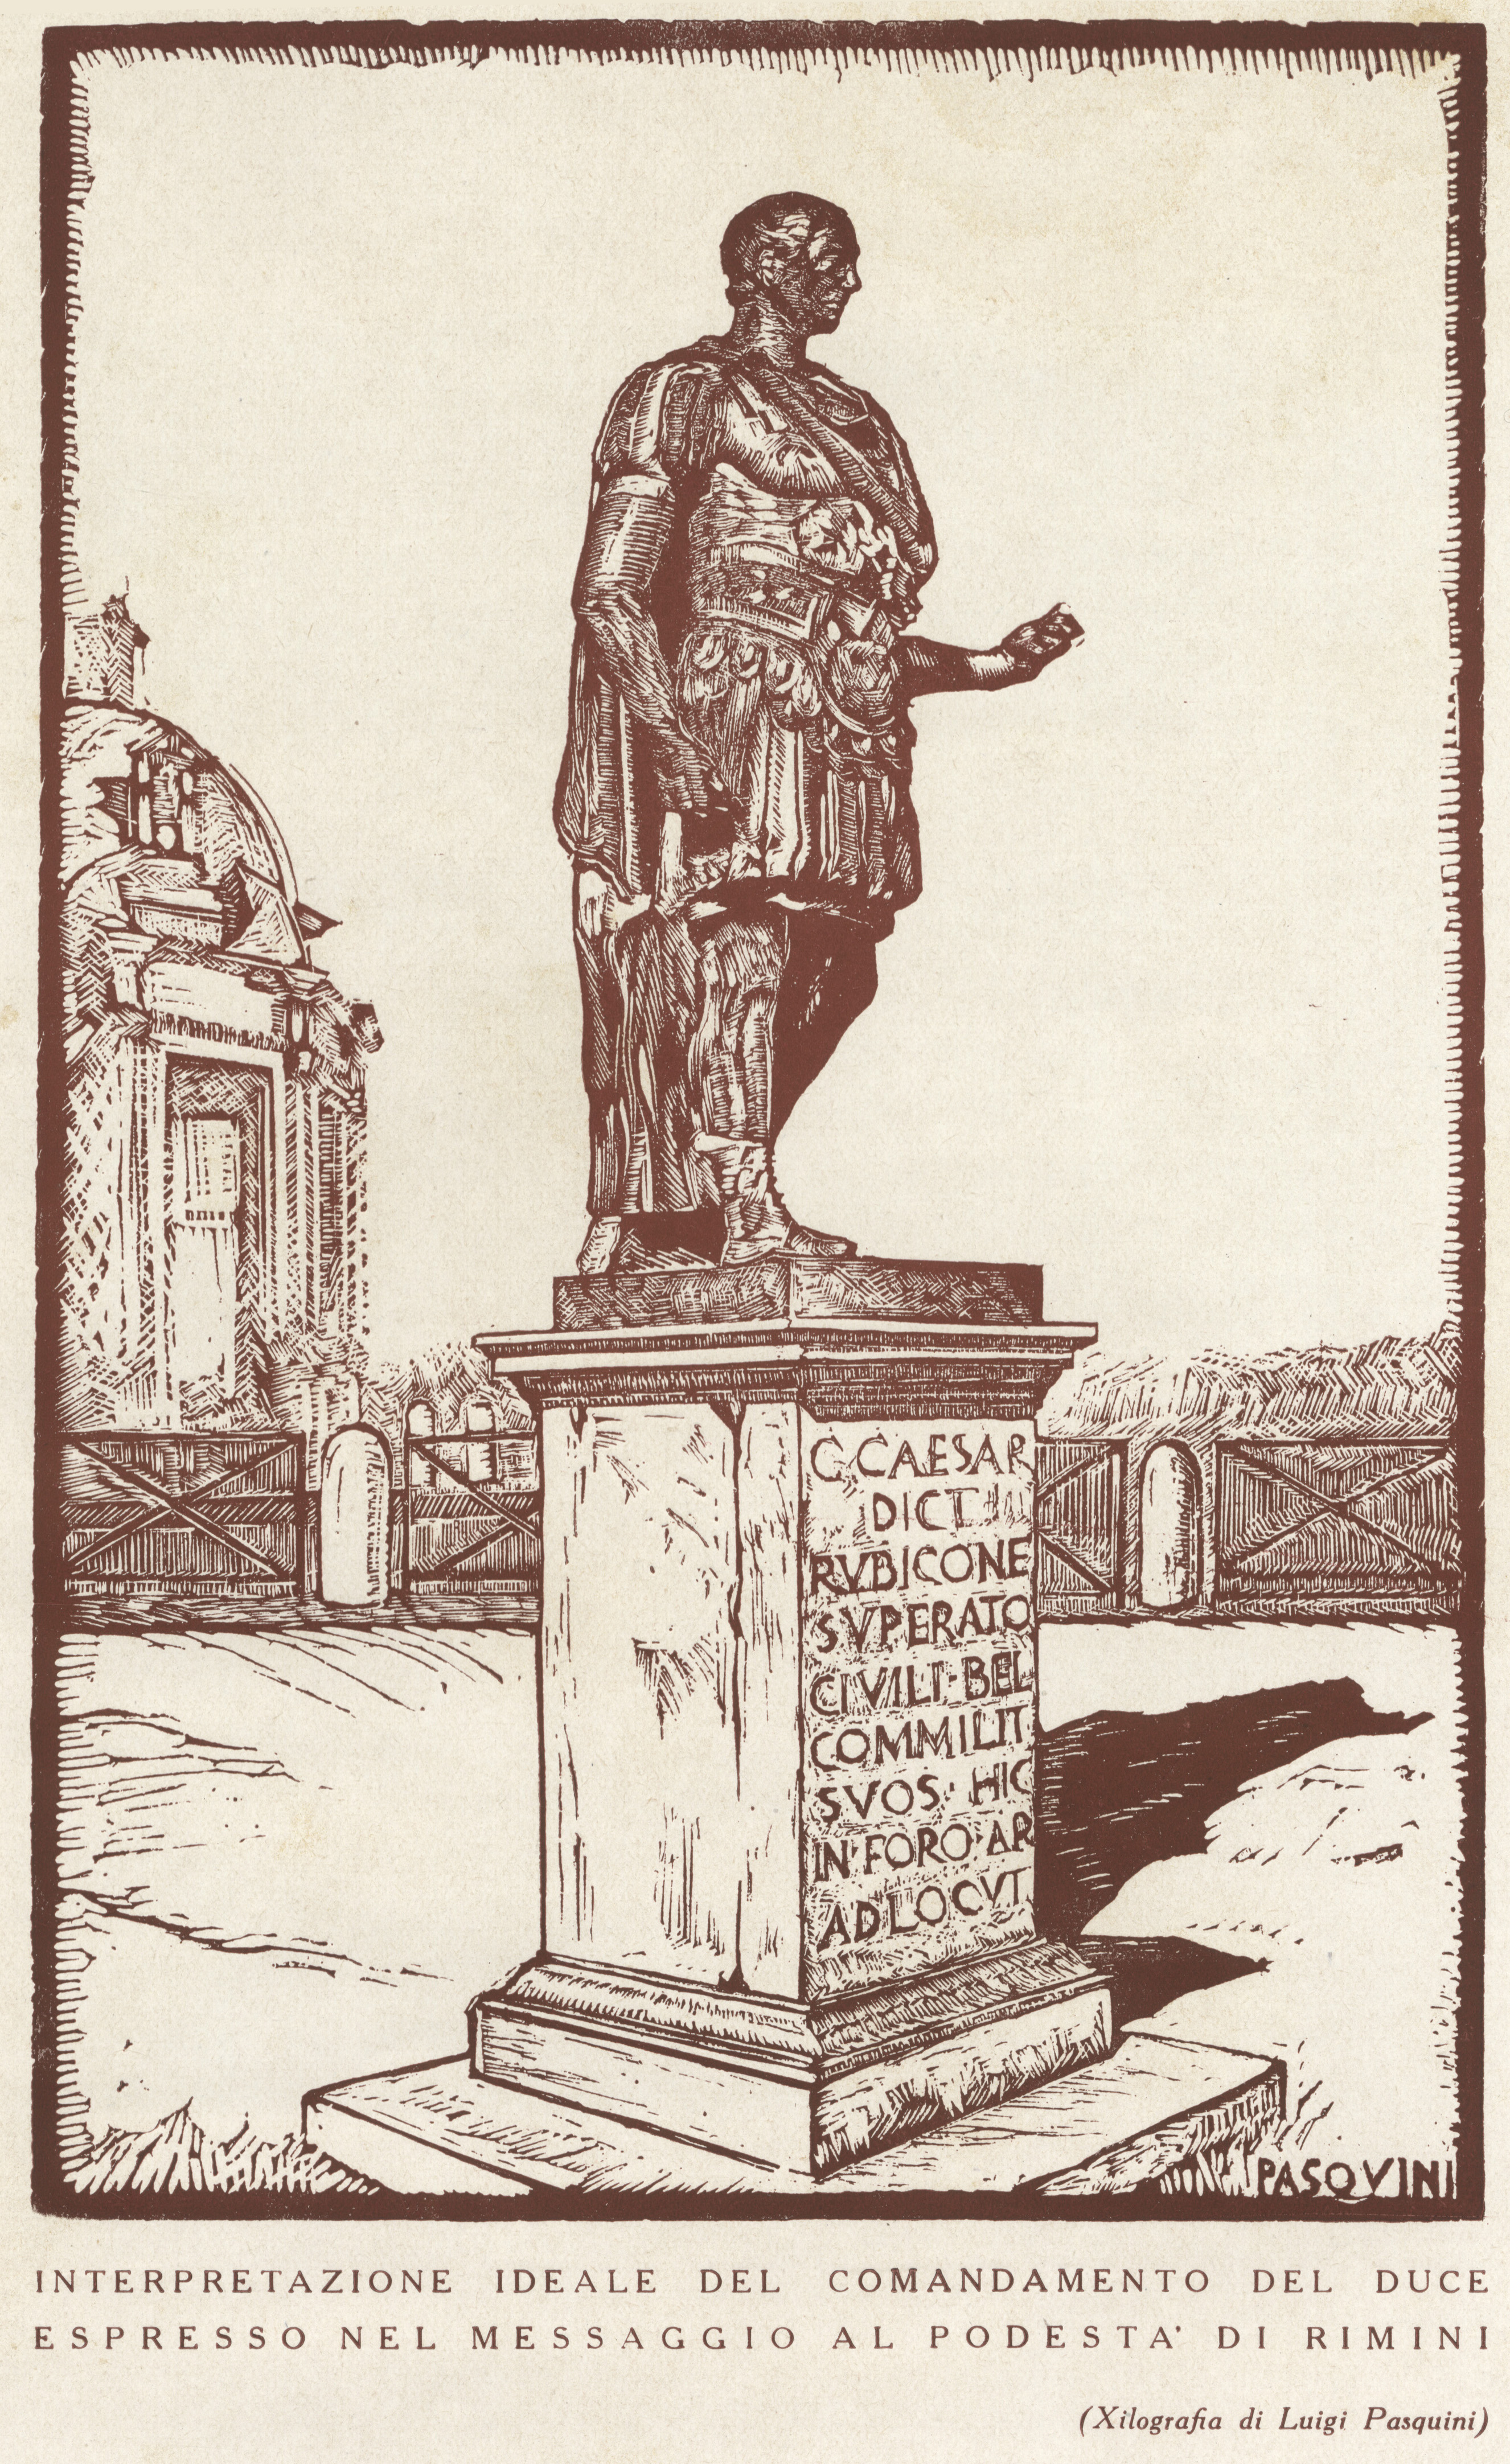 Fig. 2. Xilografia di Luigi Pasquini: “Interpretazione ideale del comandamento del Duce espresso nel messaggio al Podestà di Rimini” [Pasquini 1933].